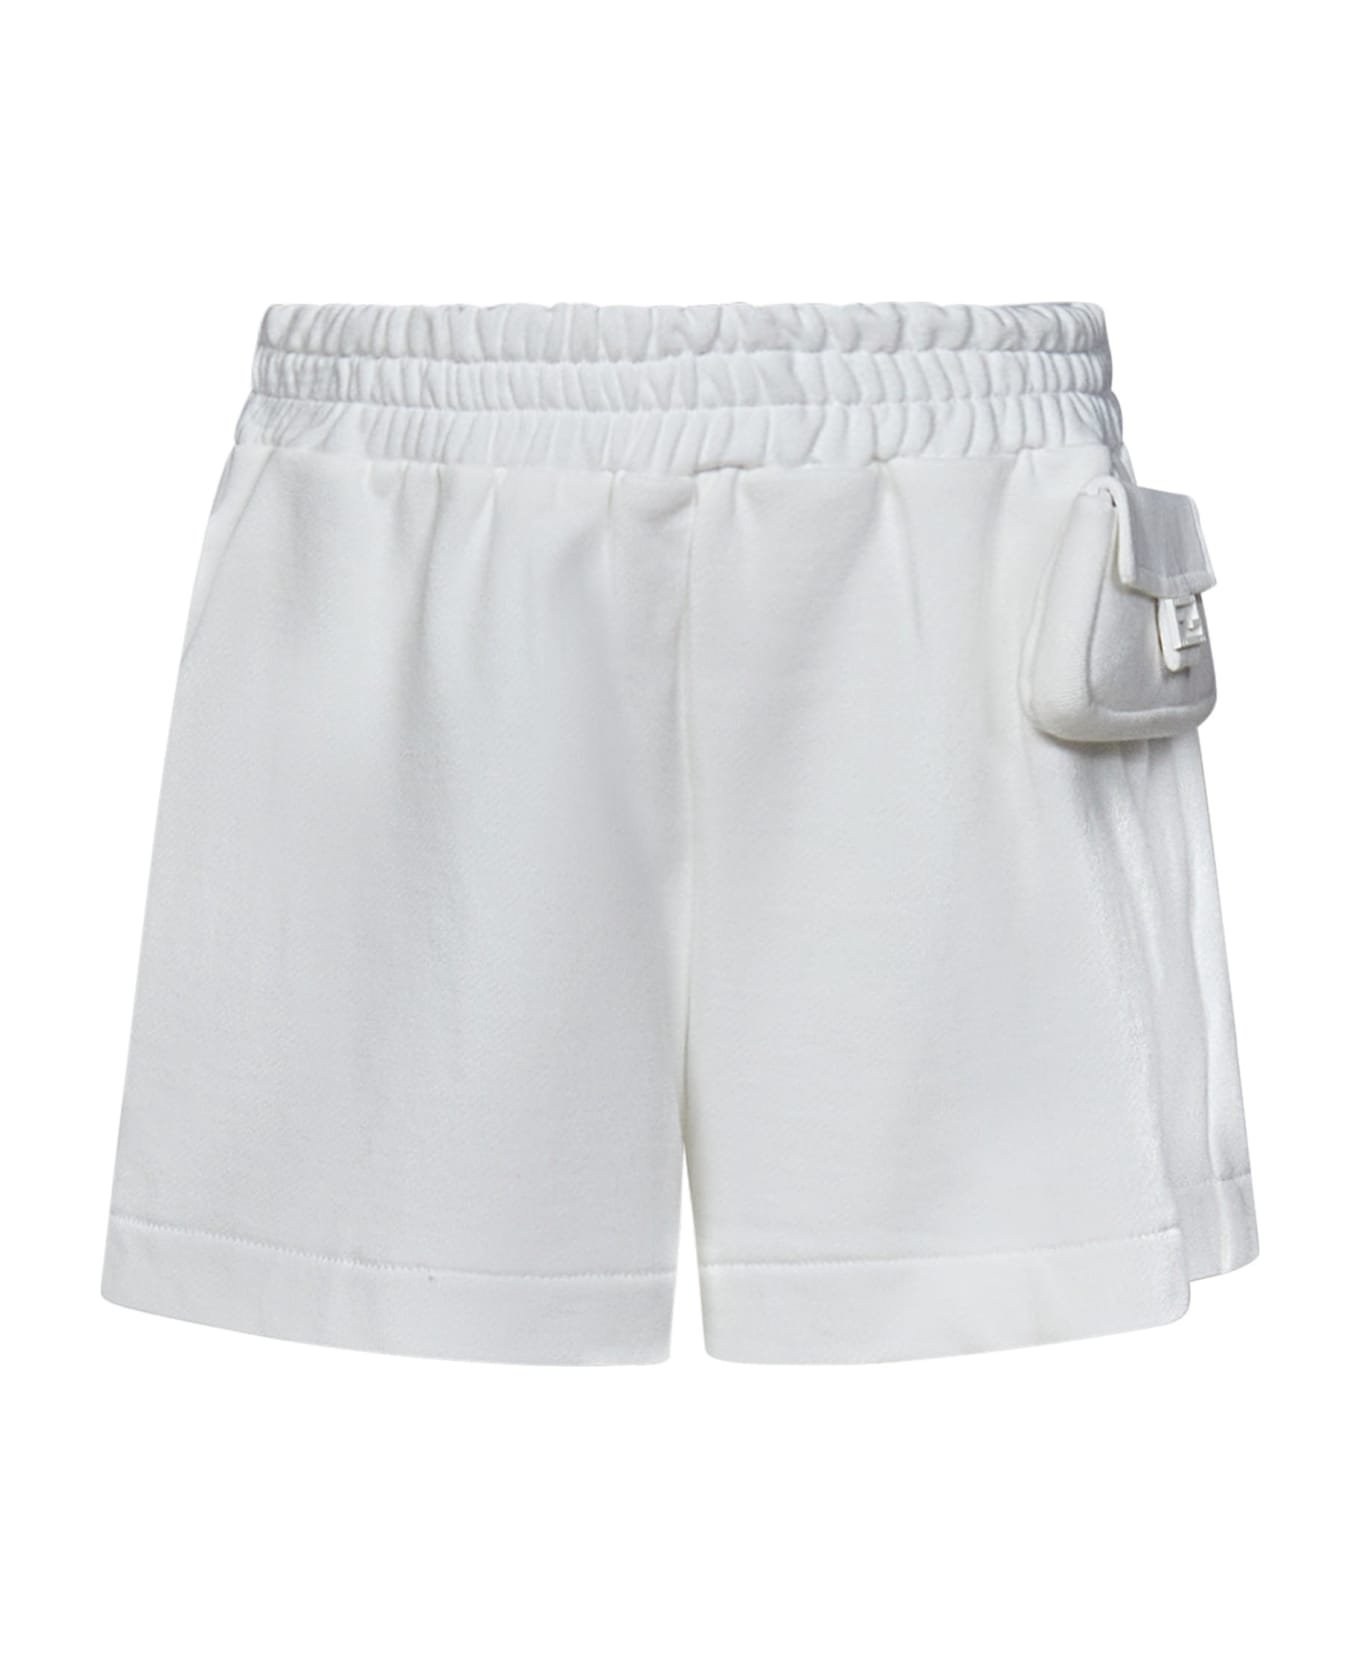 Fendi Kids Shorts - White